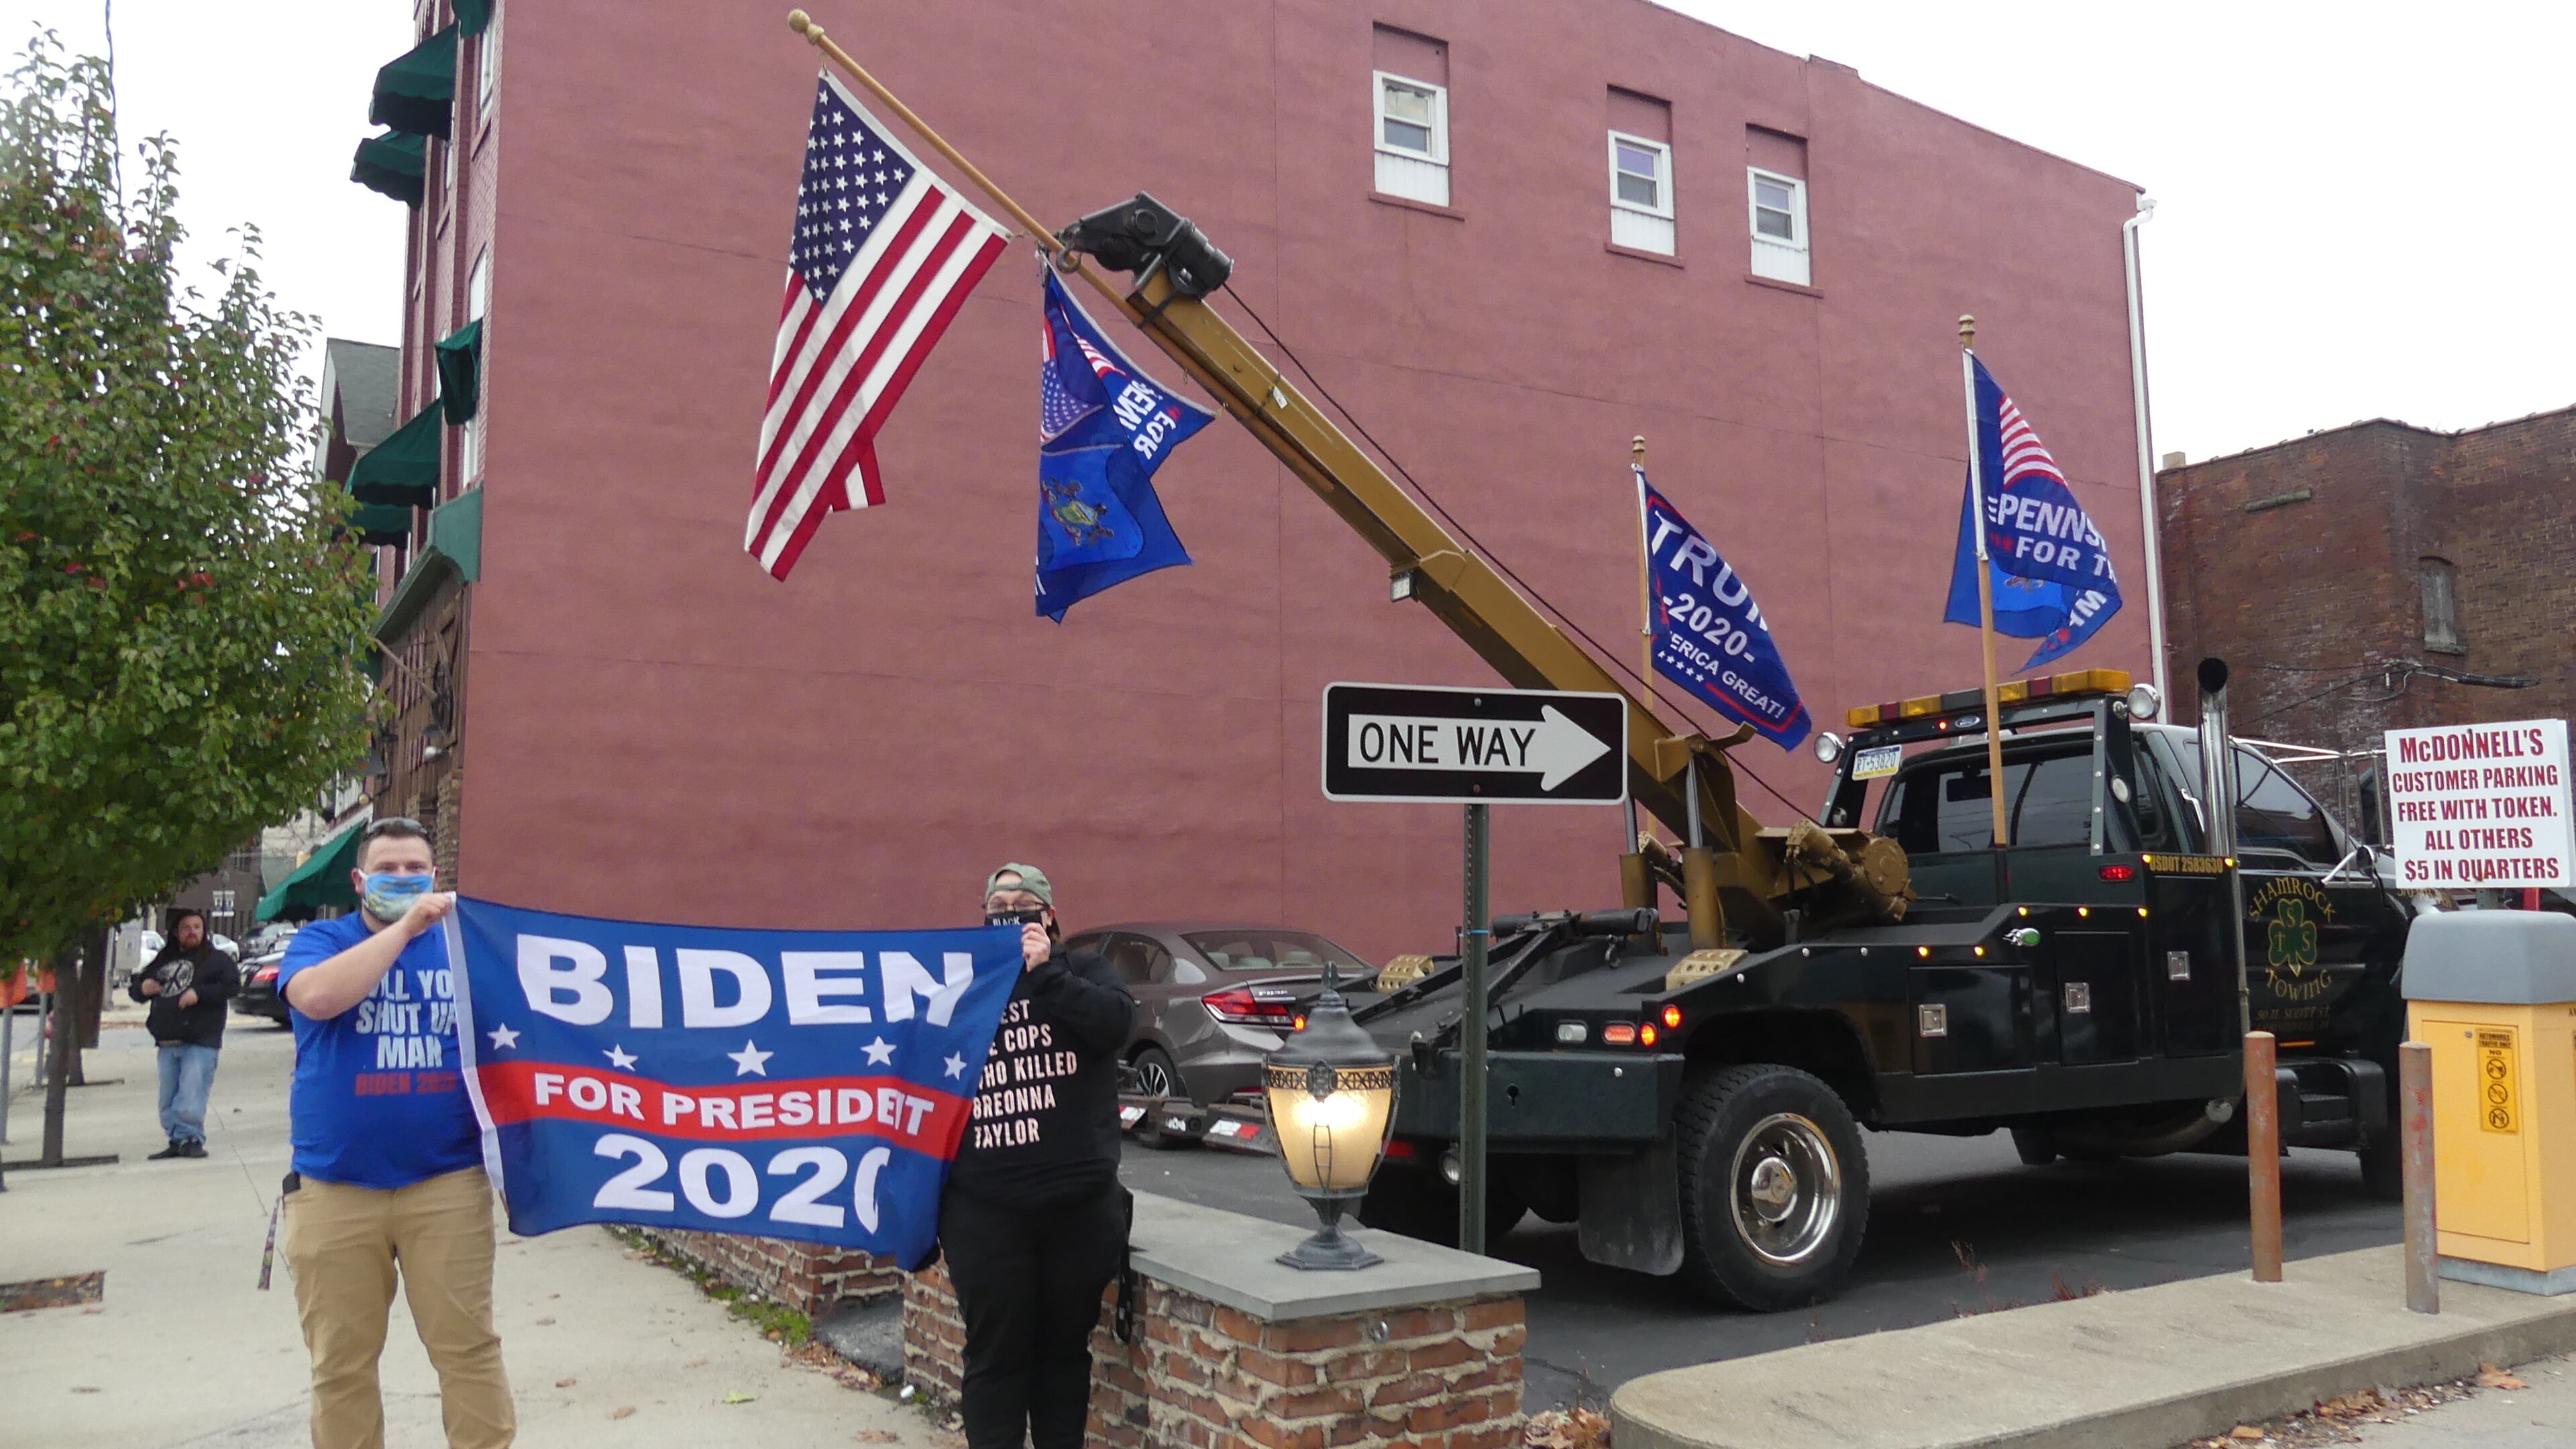 02/11/2020 Partidarios de Joe Biden muestran un cartel a su favor junto a banderas a favor de Donald Trump en Pensilvania
POLITICA NORTEAMÉRICA ESTADOS UNIDOS INTERNACIONAL
JULIA MINEEVA / ZUMA PRESS / CONTACTOPHOTO
